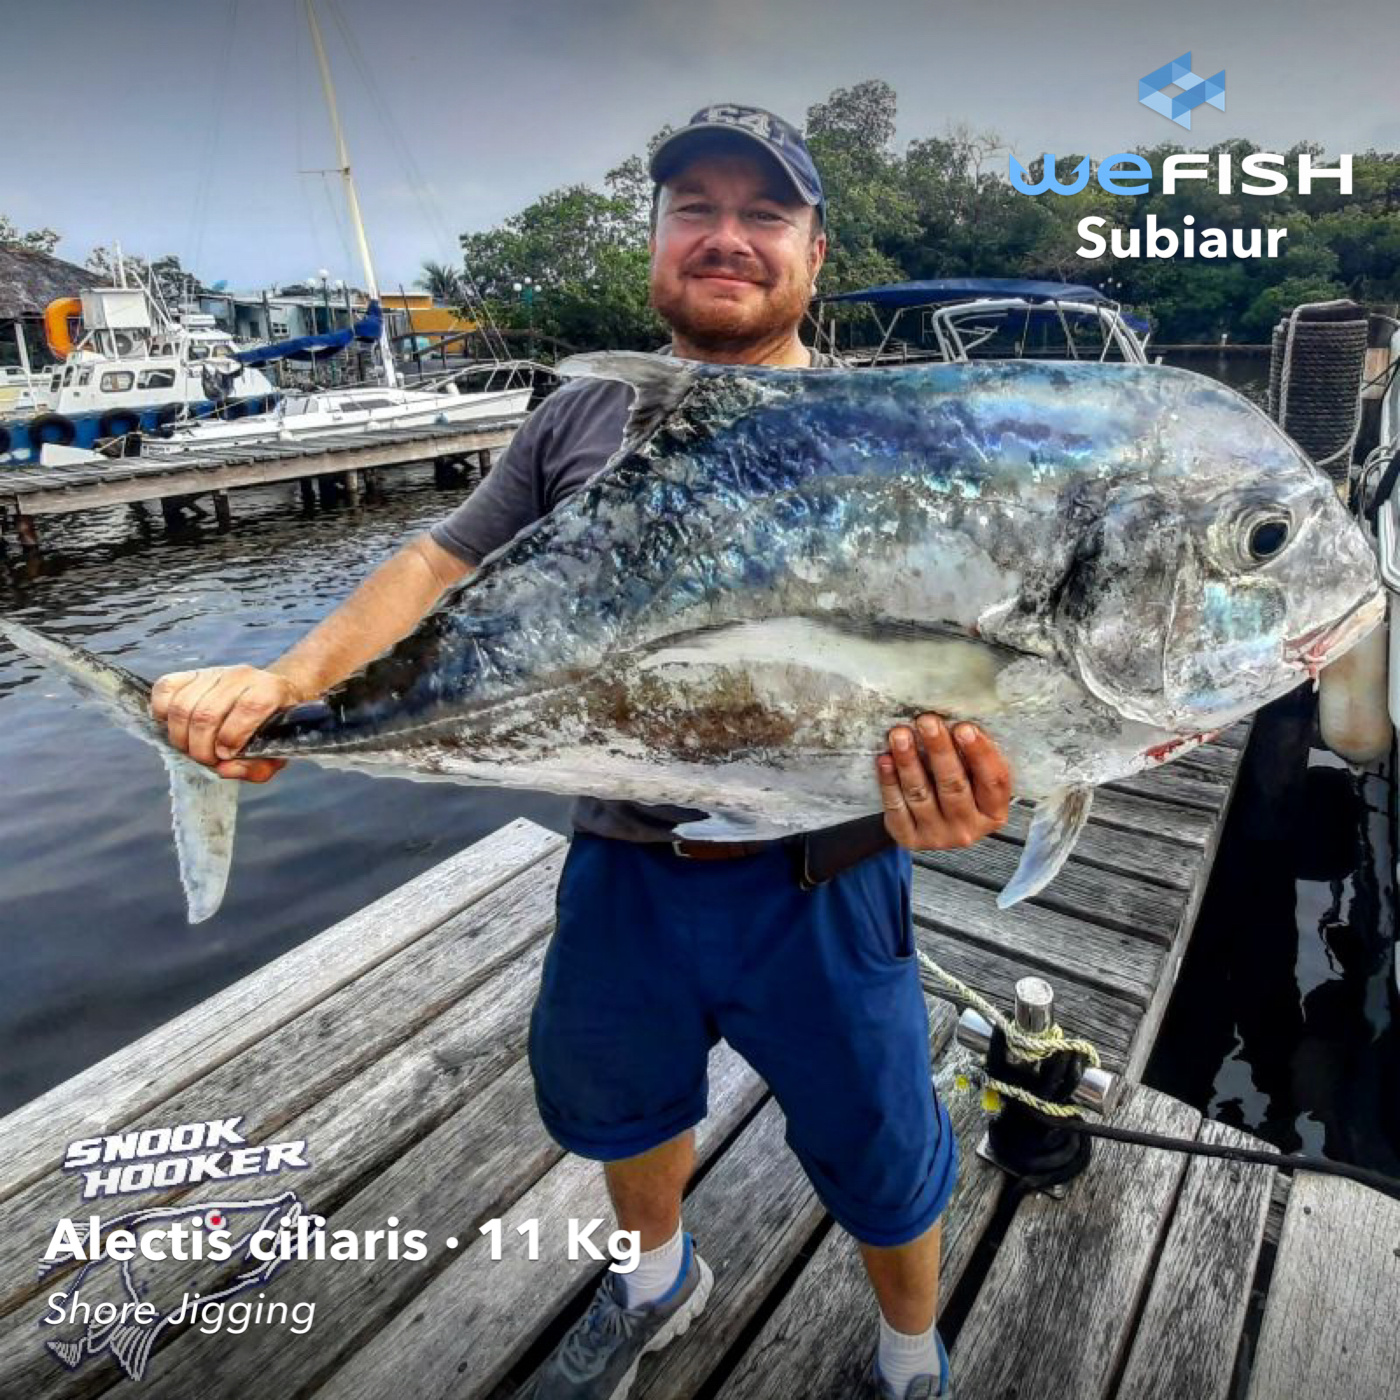 Florida fishing
Best Fishing Spots in Florida
fishing app wefish